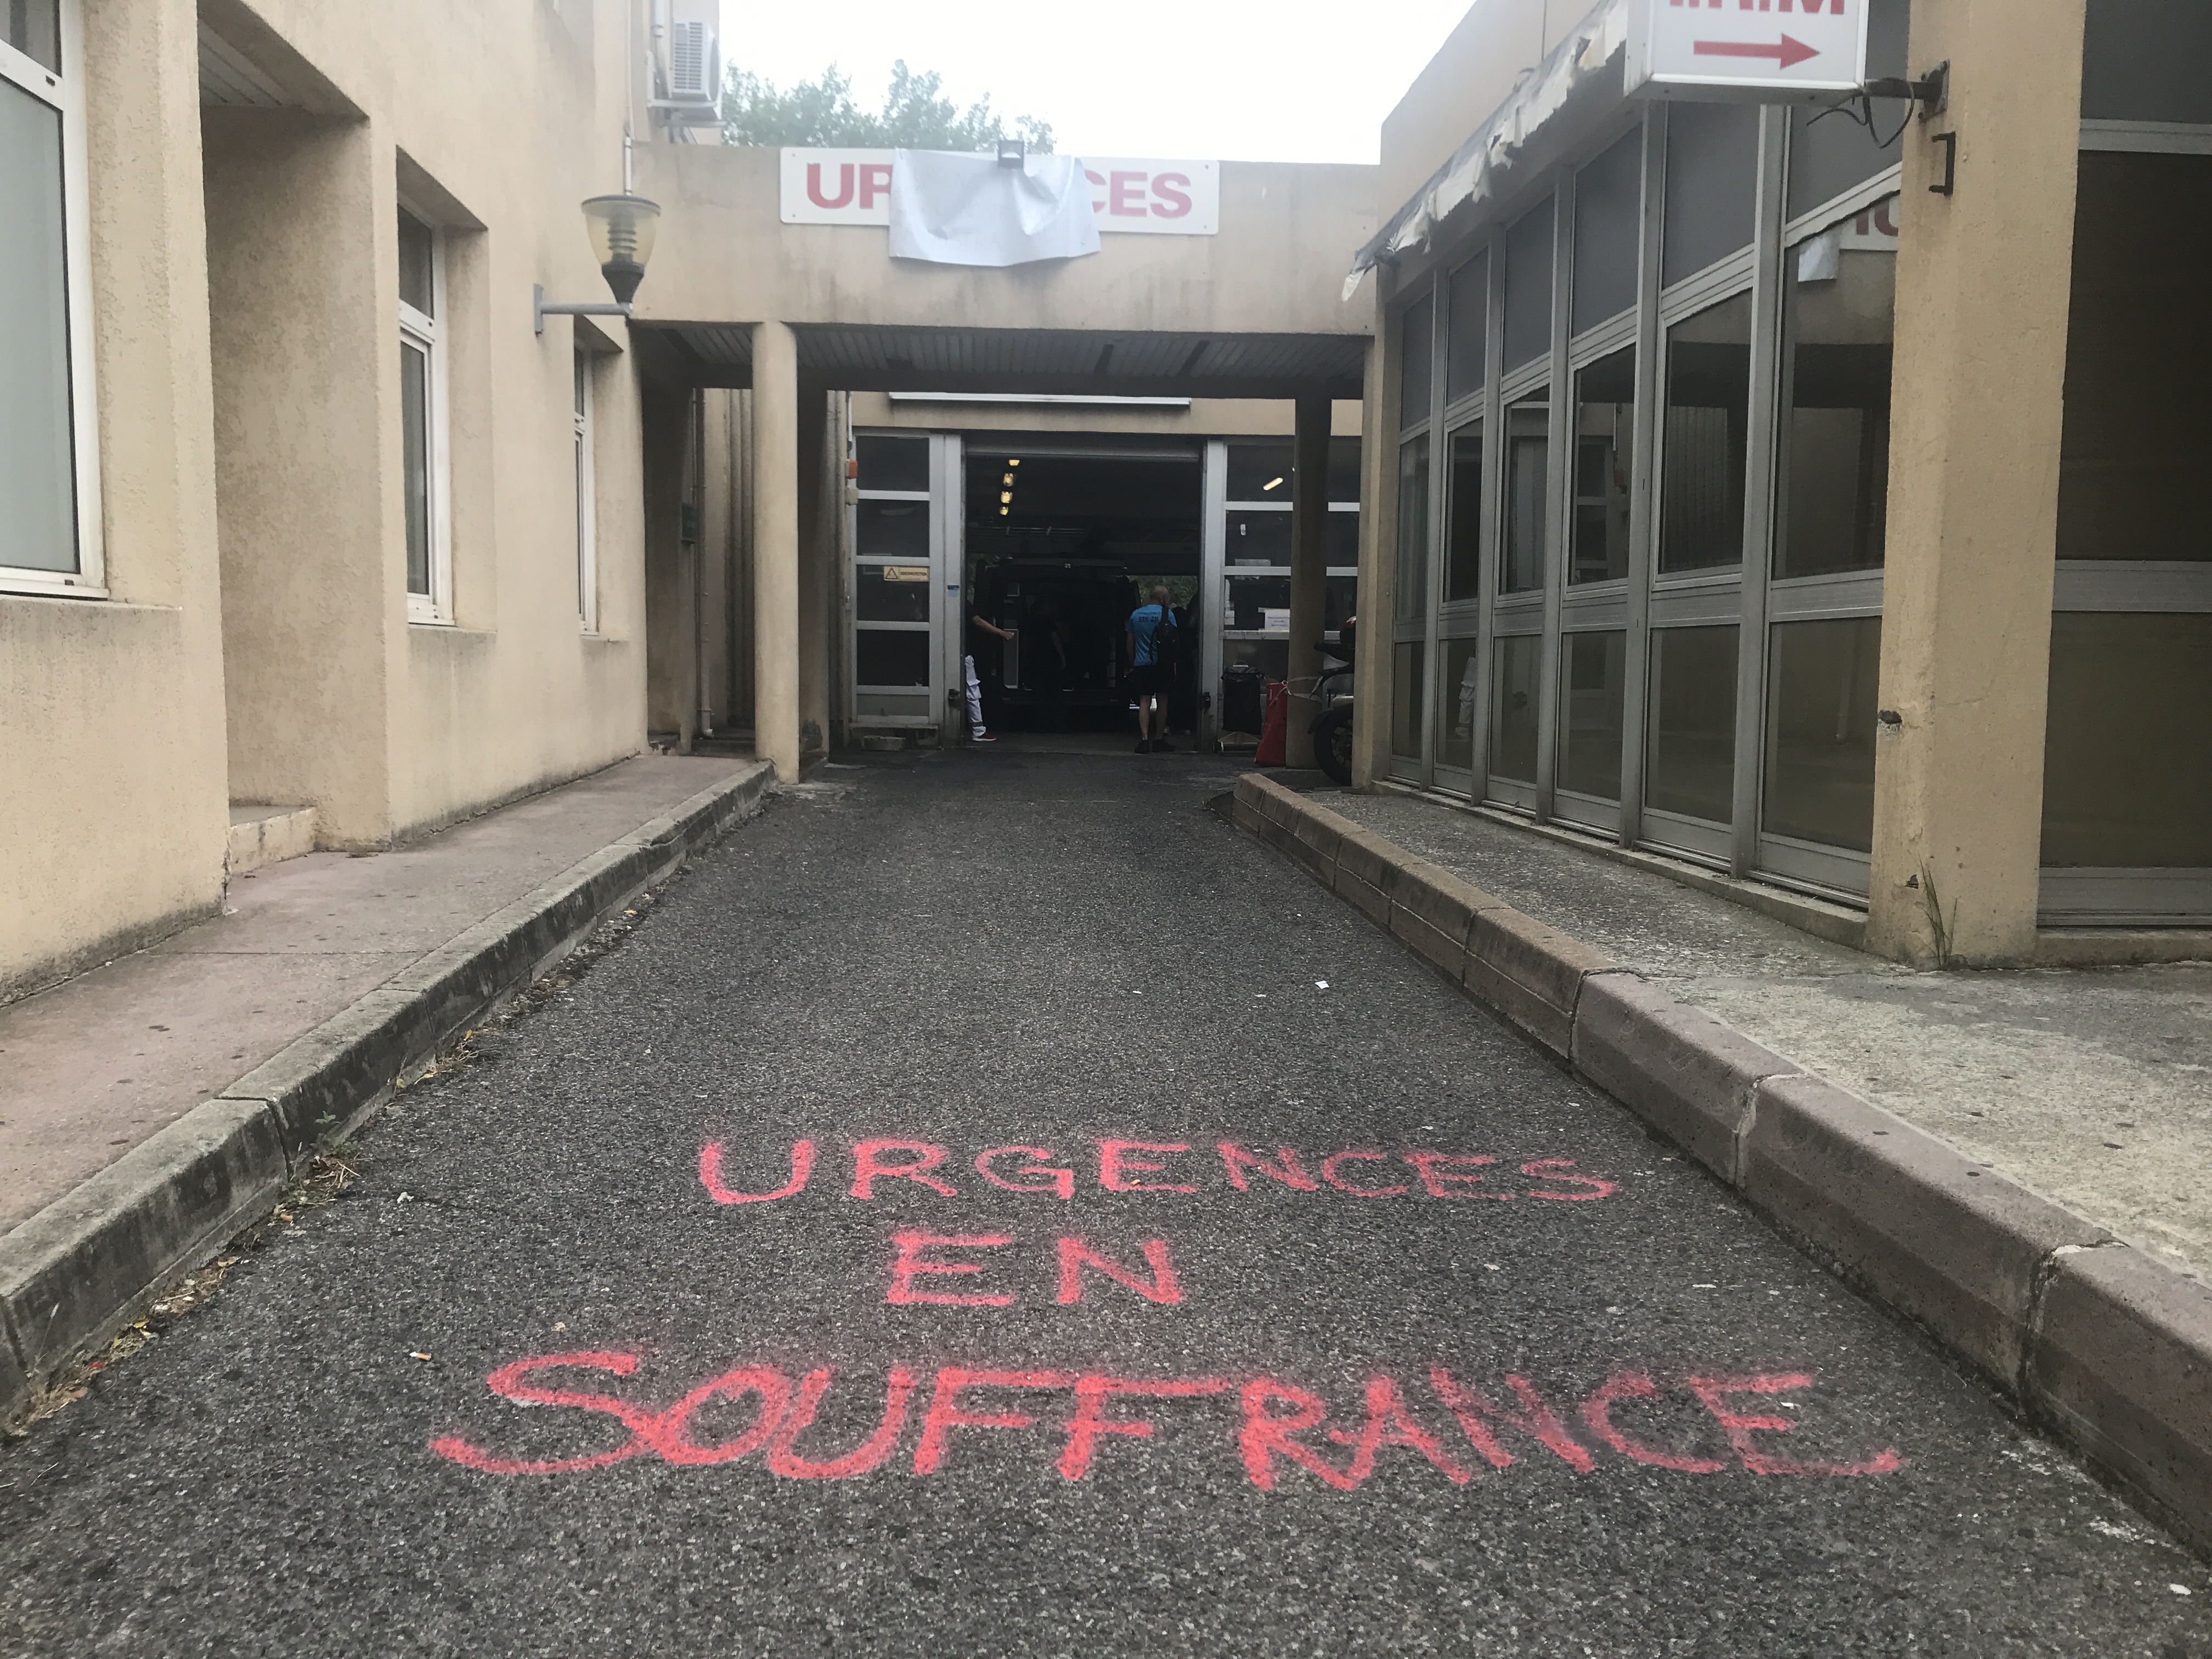 VIDEO - Urgences à Bastia : "Même en grève nous ne refusons pas les patients"